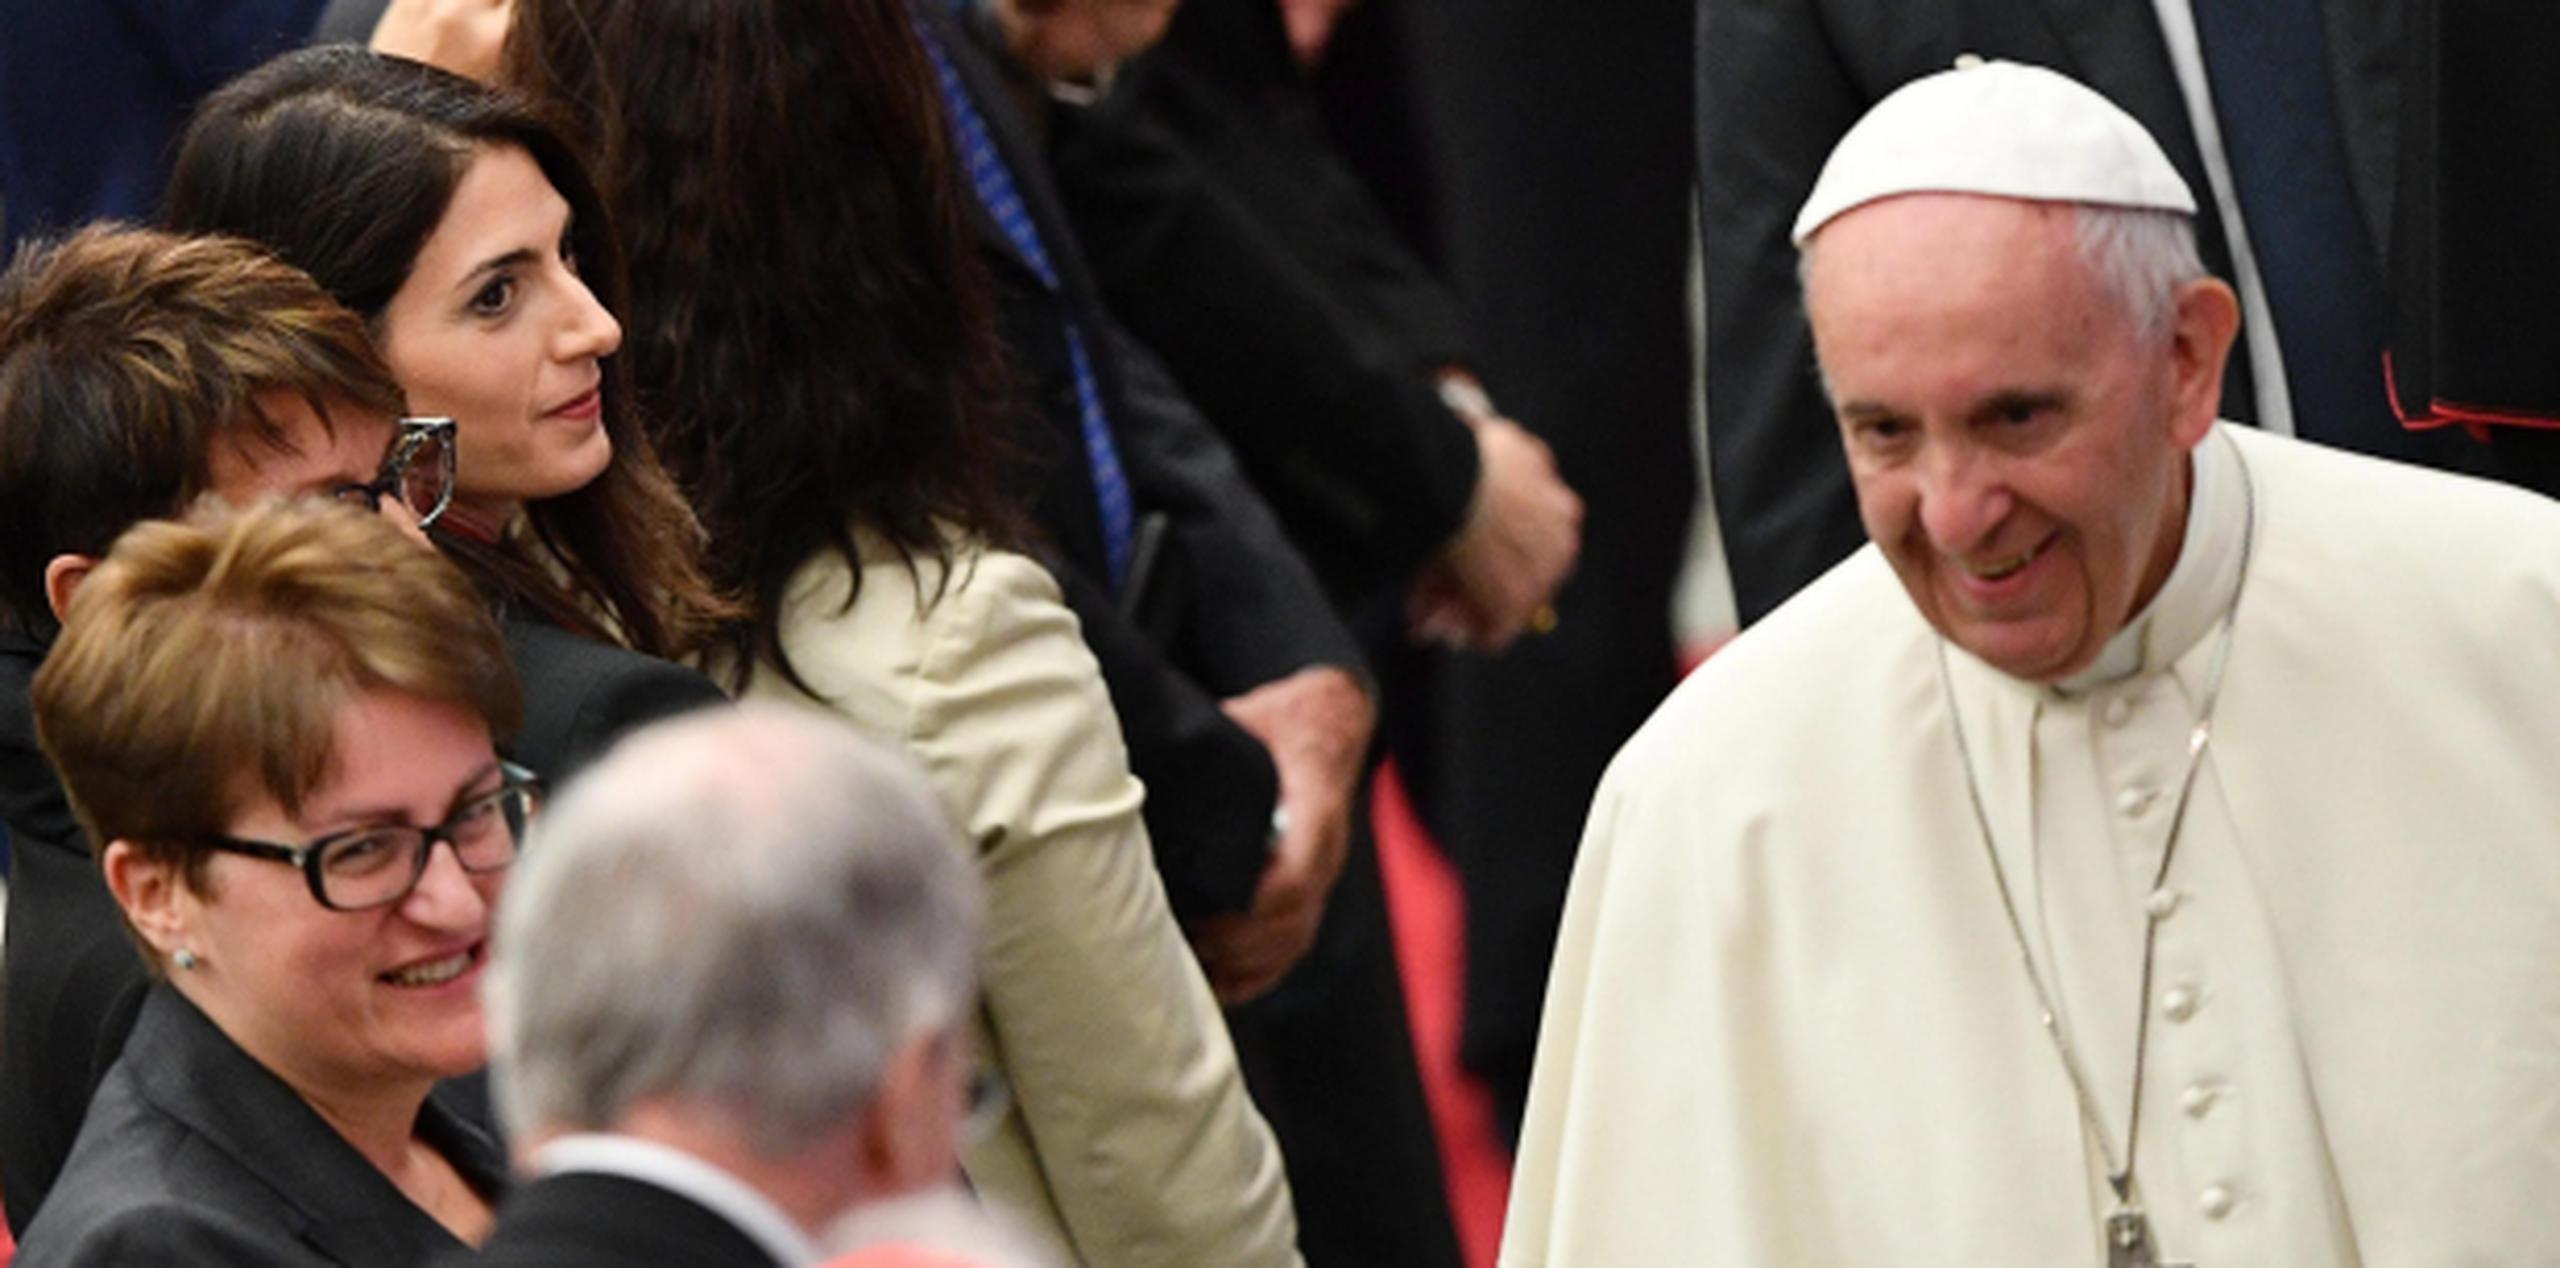 El exhorto papal llegó en un periodo de escándalos por corrupción en el deporte, desde la crisis de la FIFA hasta el arresto de un dirigente olímpico por reventa de boletos. (Agencia EFE)